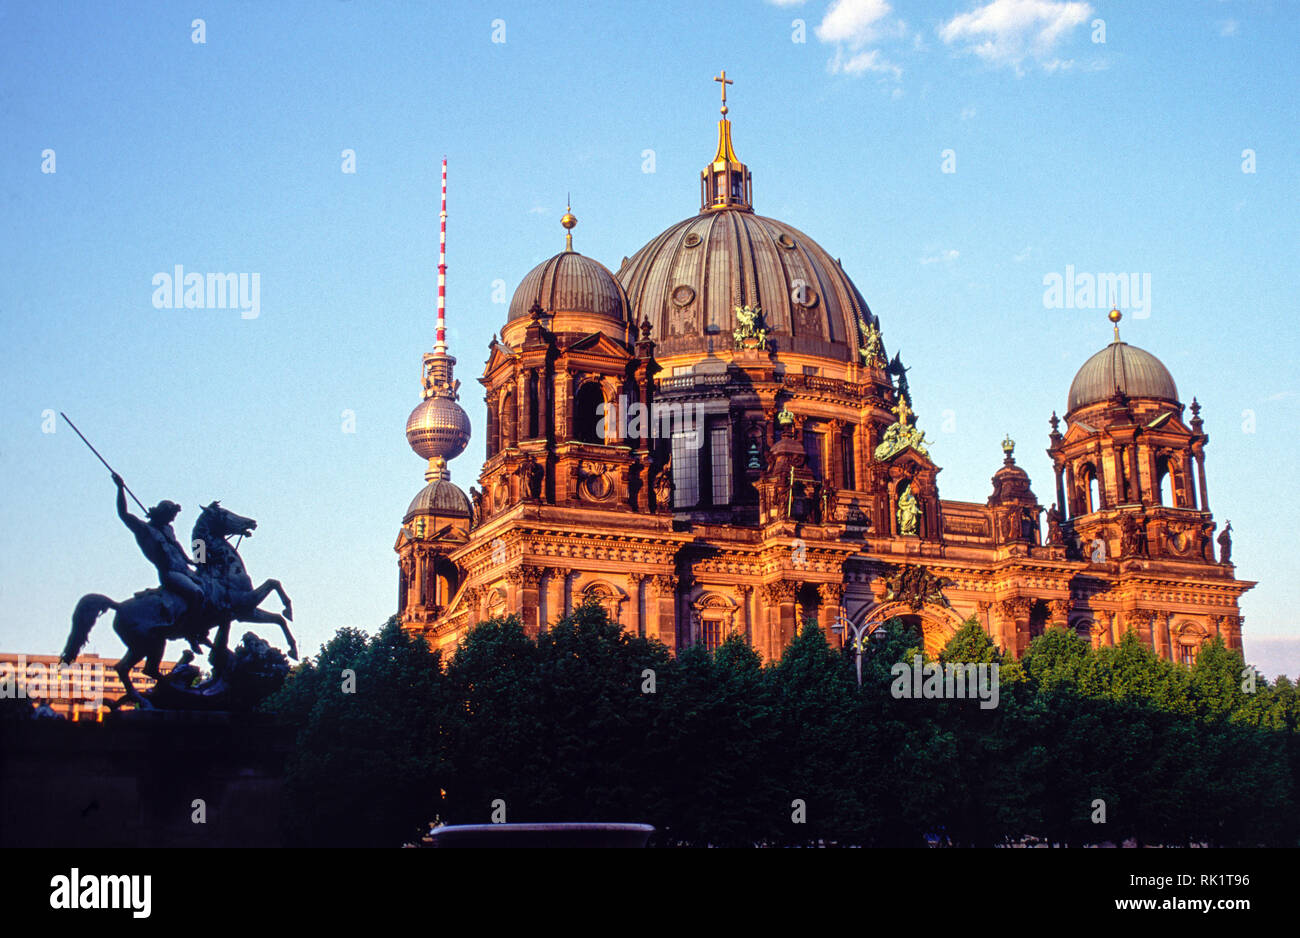 Berlin, Deutschland; Der Berliner Dom (Berliner Dom) wurde zwischen 1895 und 1905 gebaut. Der Berliner Fernsehturm (Fernsehturm) ist im Hintergrund. Stockfoto